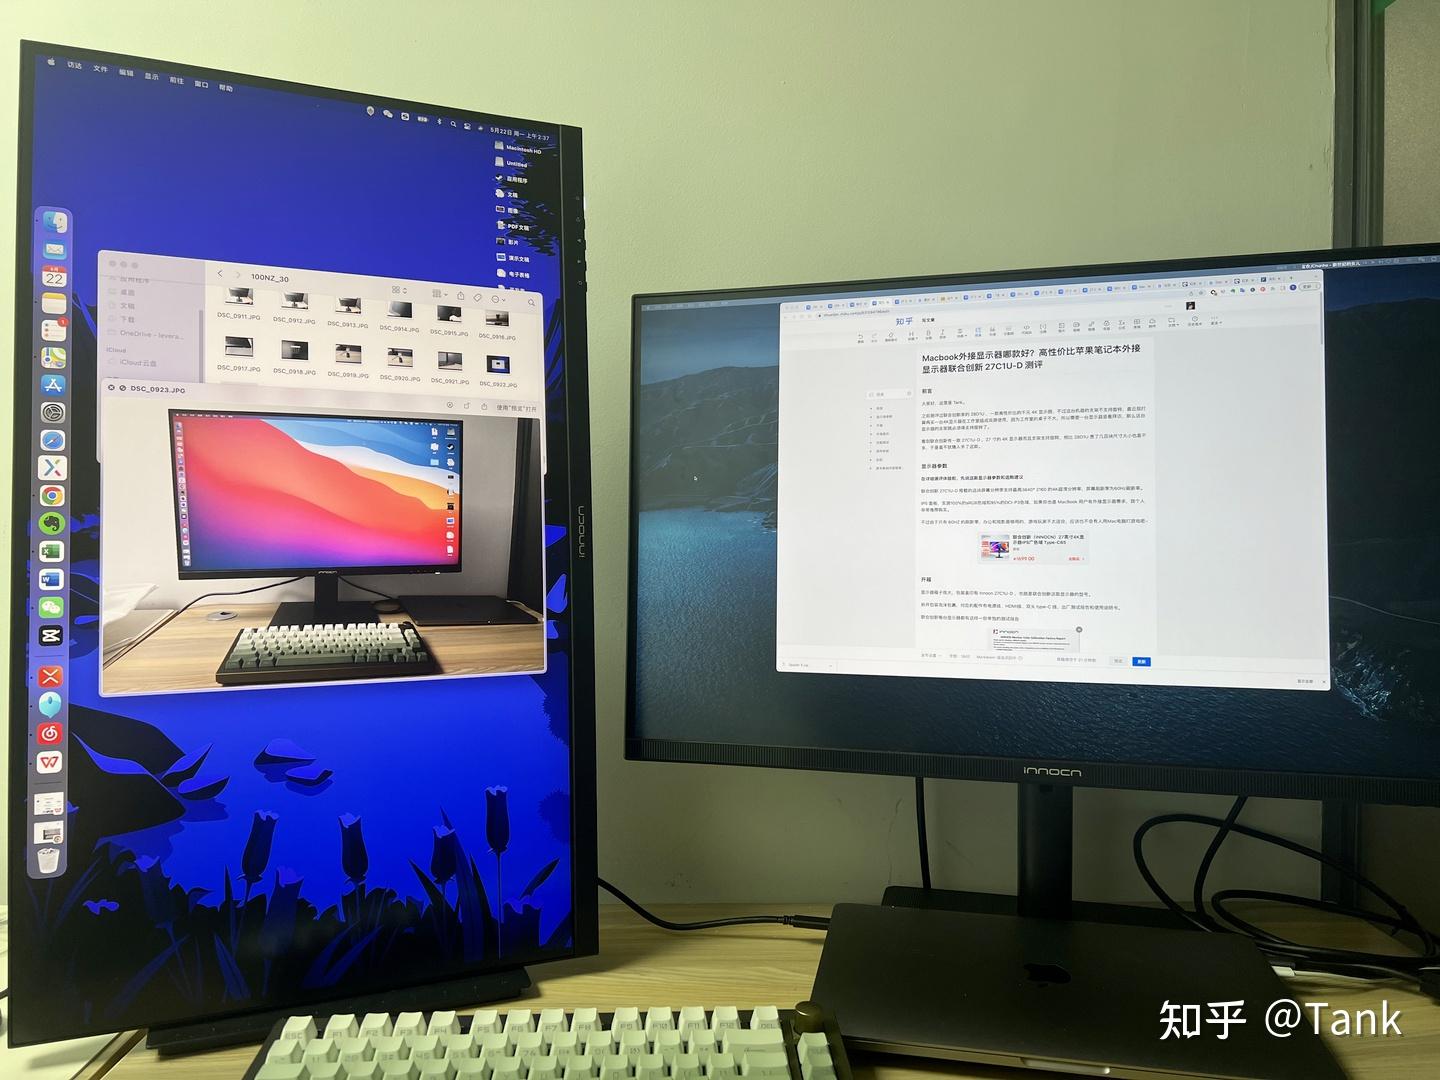 15平方的p2.5LED大屏幕显示尺寸定多大合适_P2.5LED显示屏-深圳市联硕光电有限公司